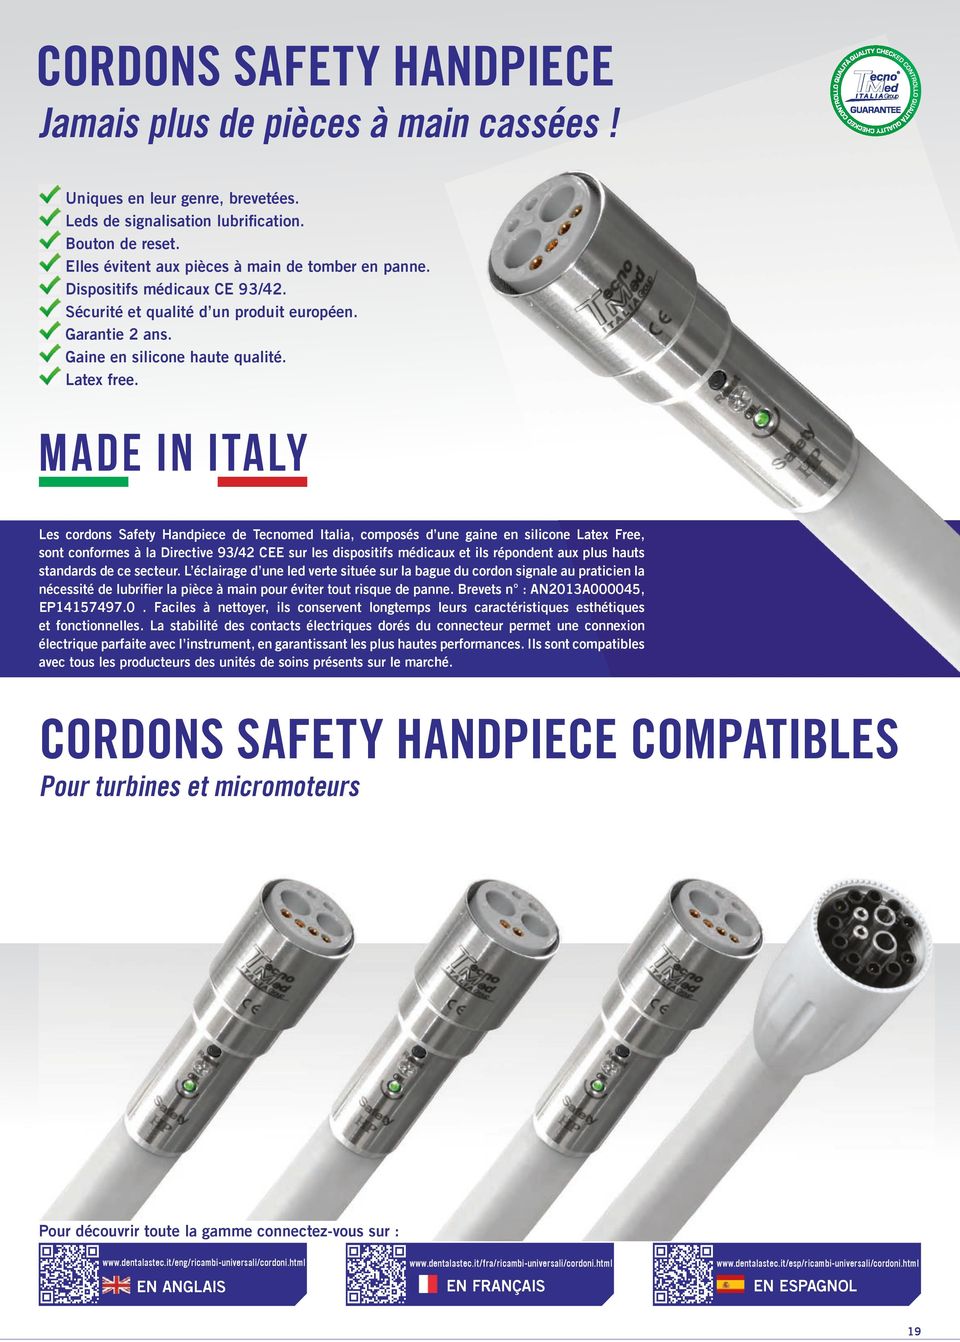 MADE IN ITALY Les cordons Safety Handpiece de Tecnomed Italia, composés d une gaine en silicone Latex Free, sont conformes à la Directive 93/42 CEE sur les dispositifs médicaux et ils répondent aux